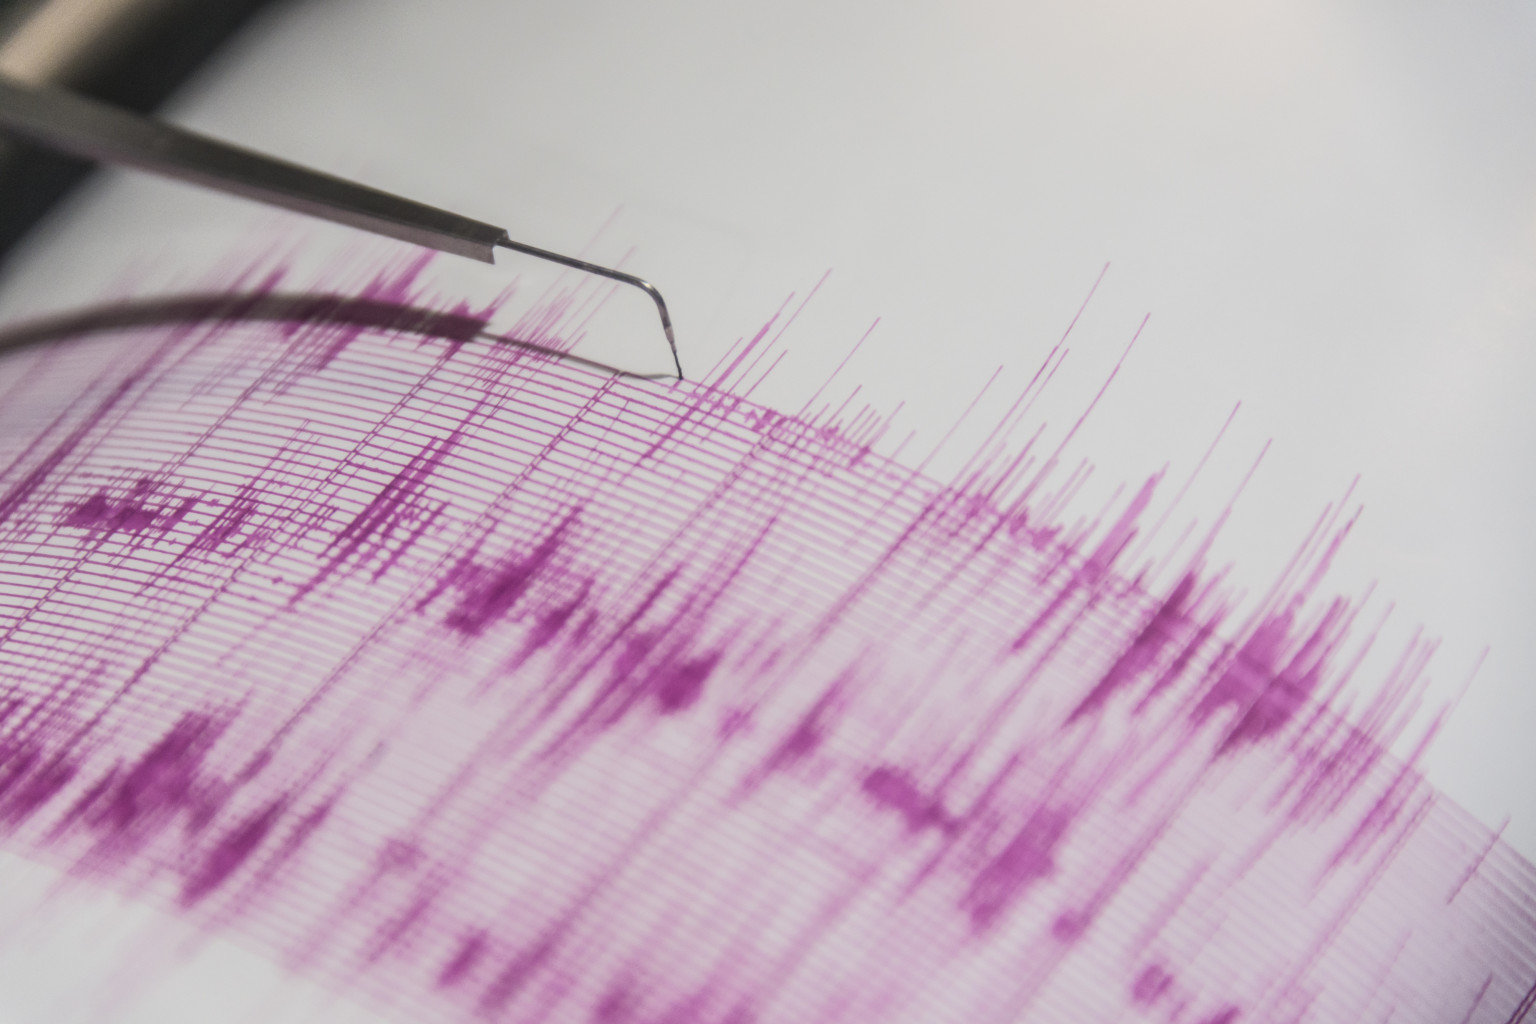 Erdbeben Seismograph